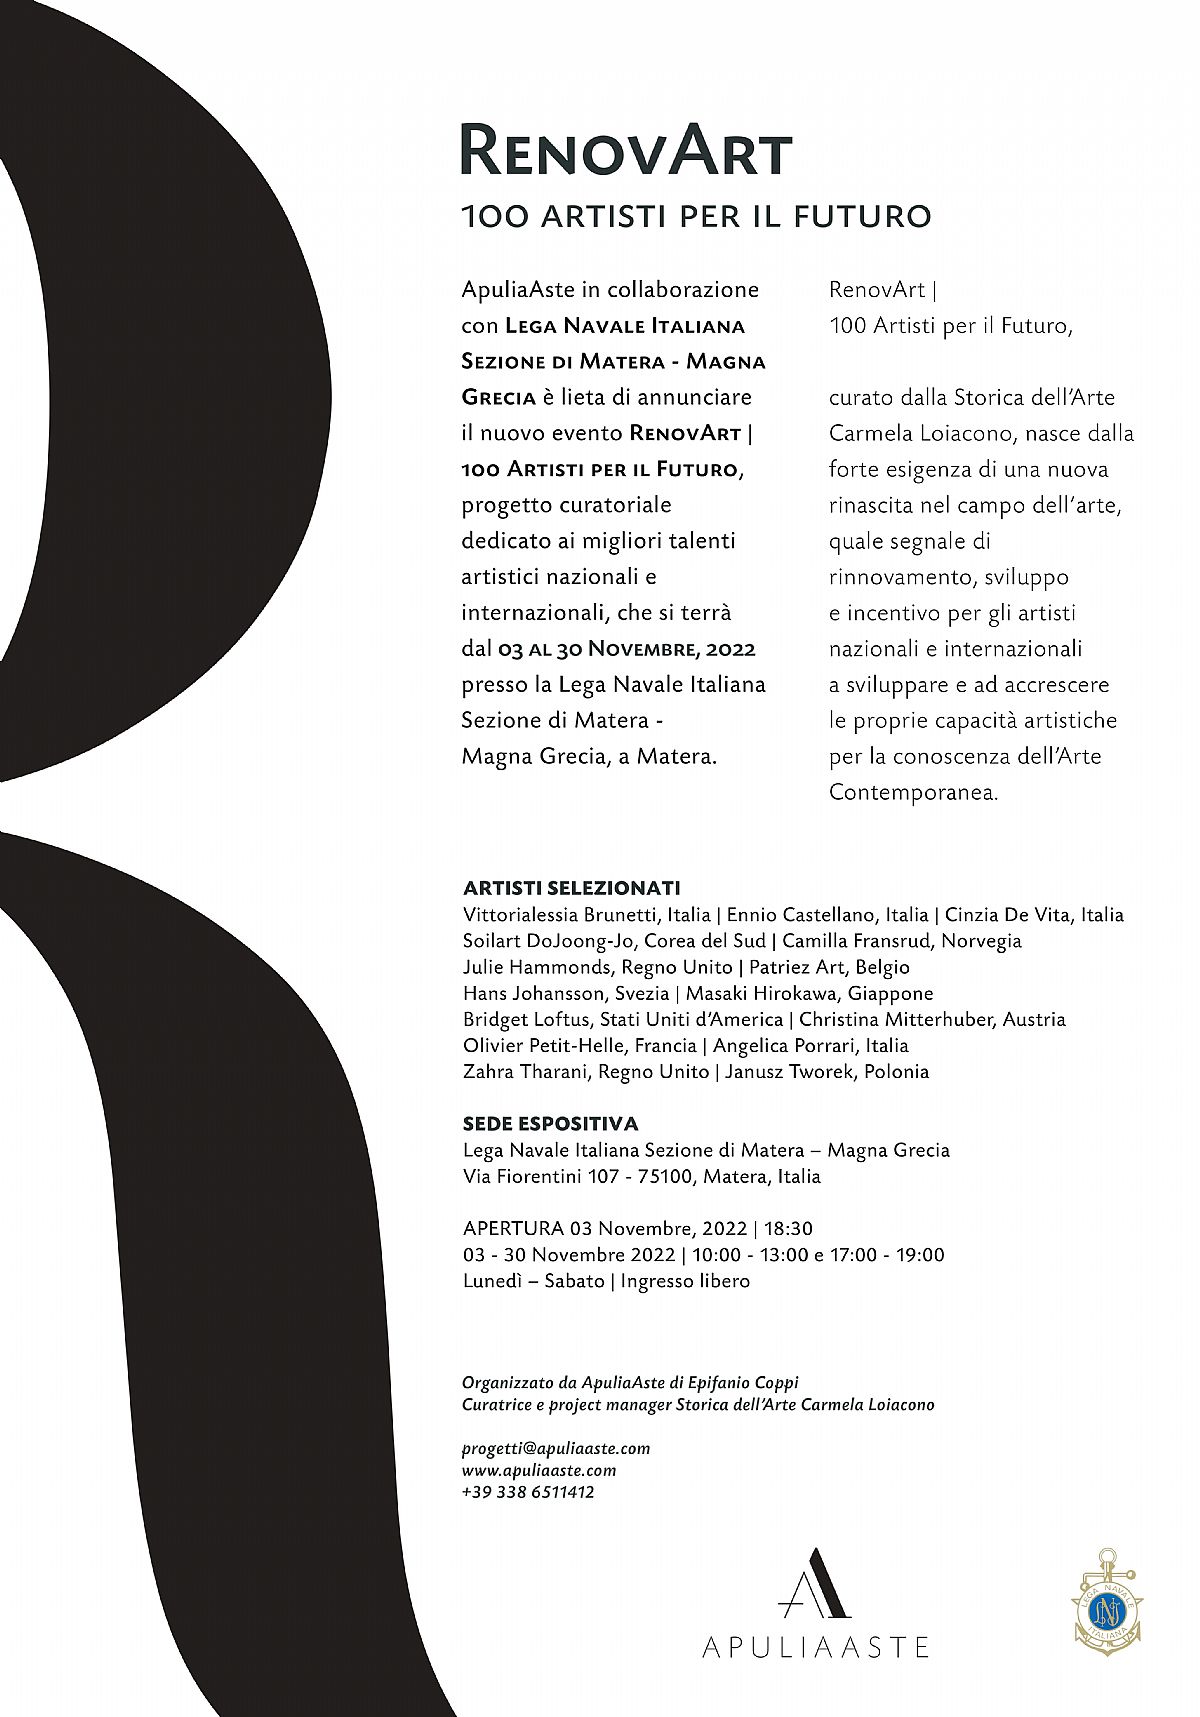 Matera, 03-30 novembre 2022 - RenovArt | 100 Artisti per il Futuro